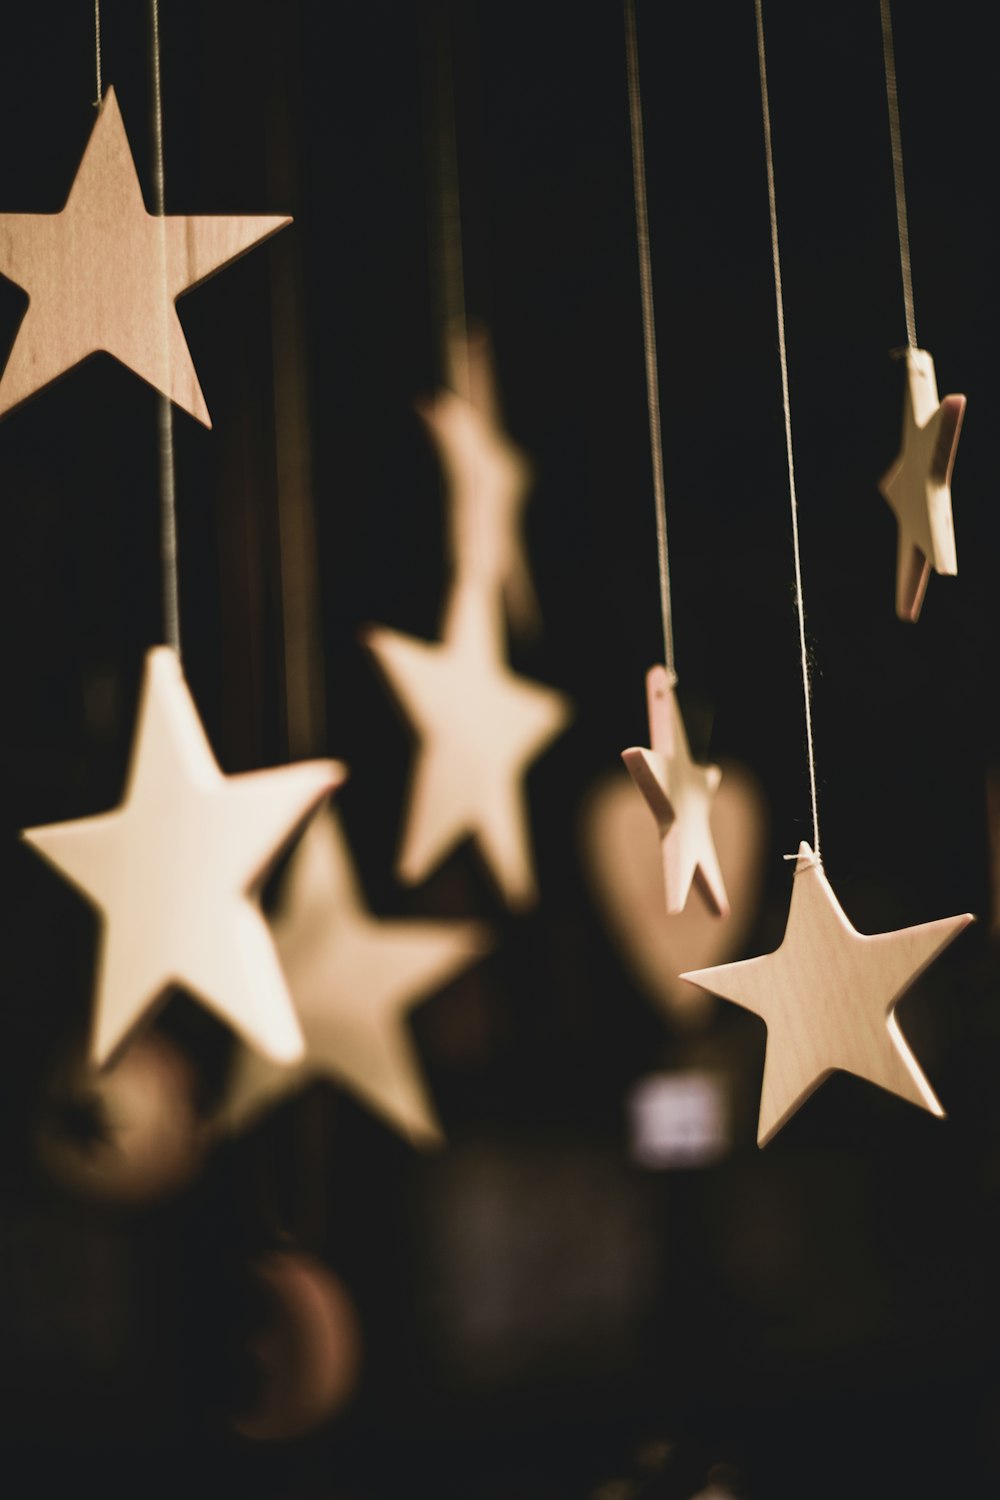 photo de mise au point peu profonde d’étoiles en bois suspendues décor